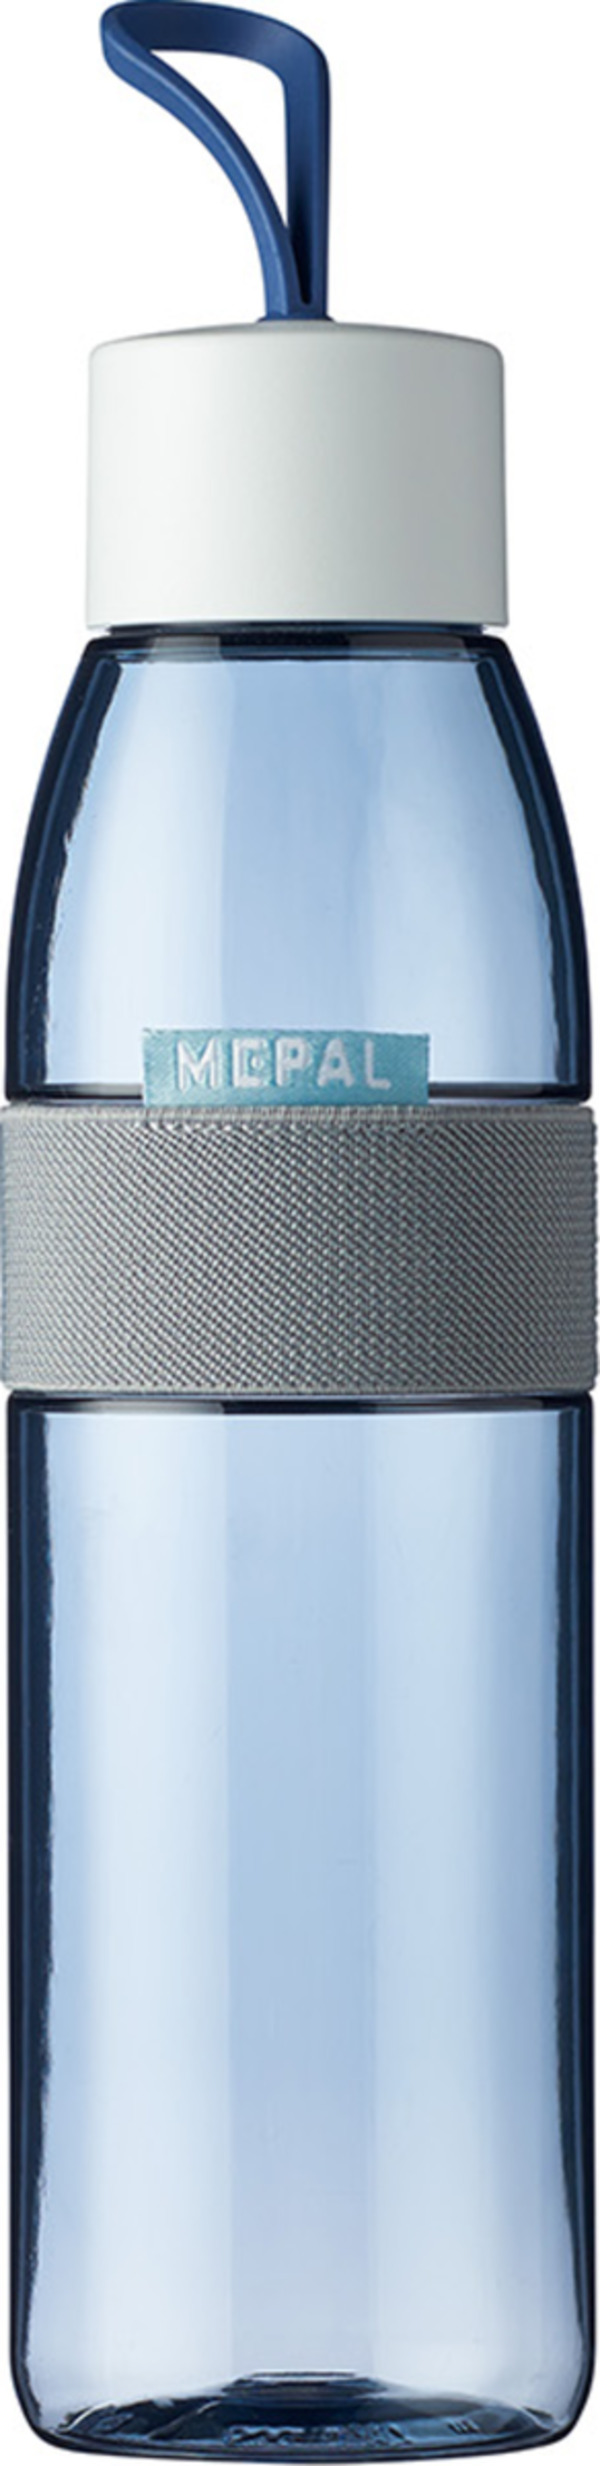 Bild 1 von MEPAL Trinkflasche ellipse 500 ml - nordic denim